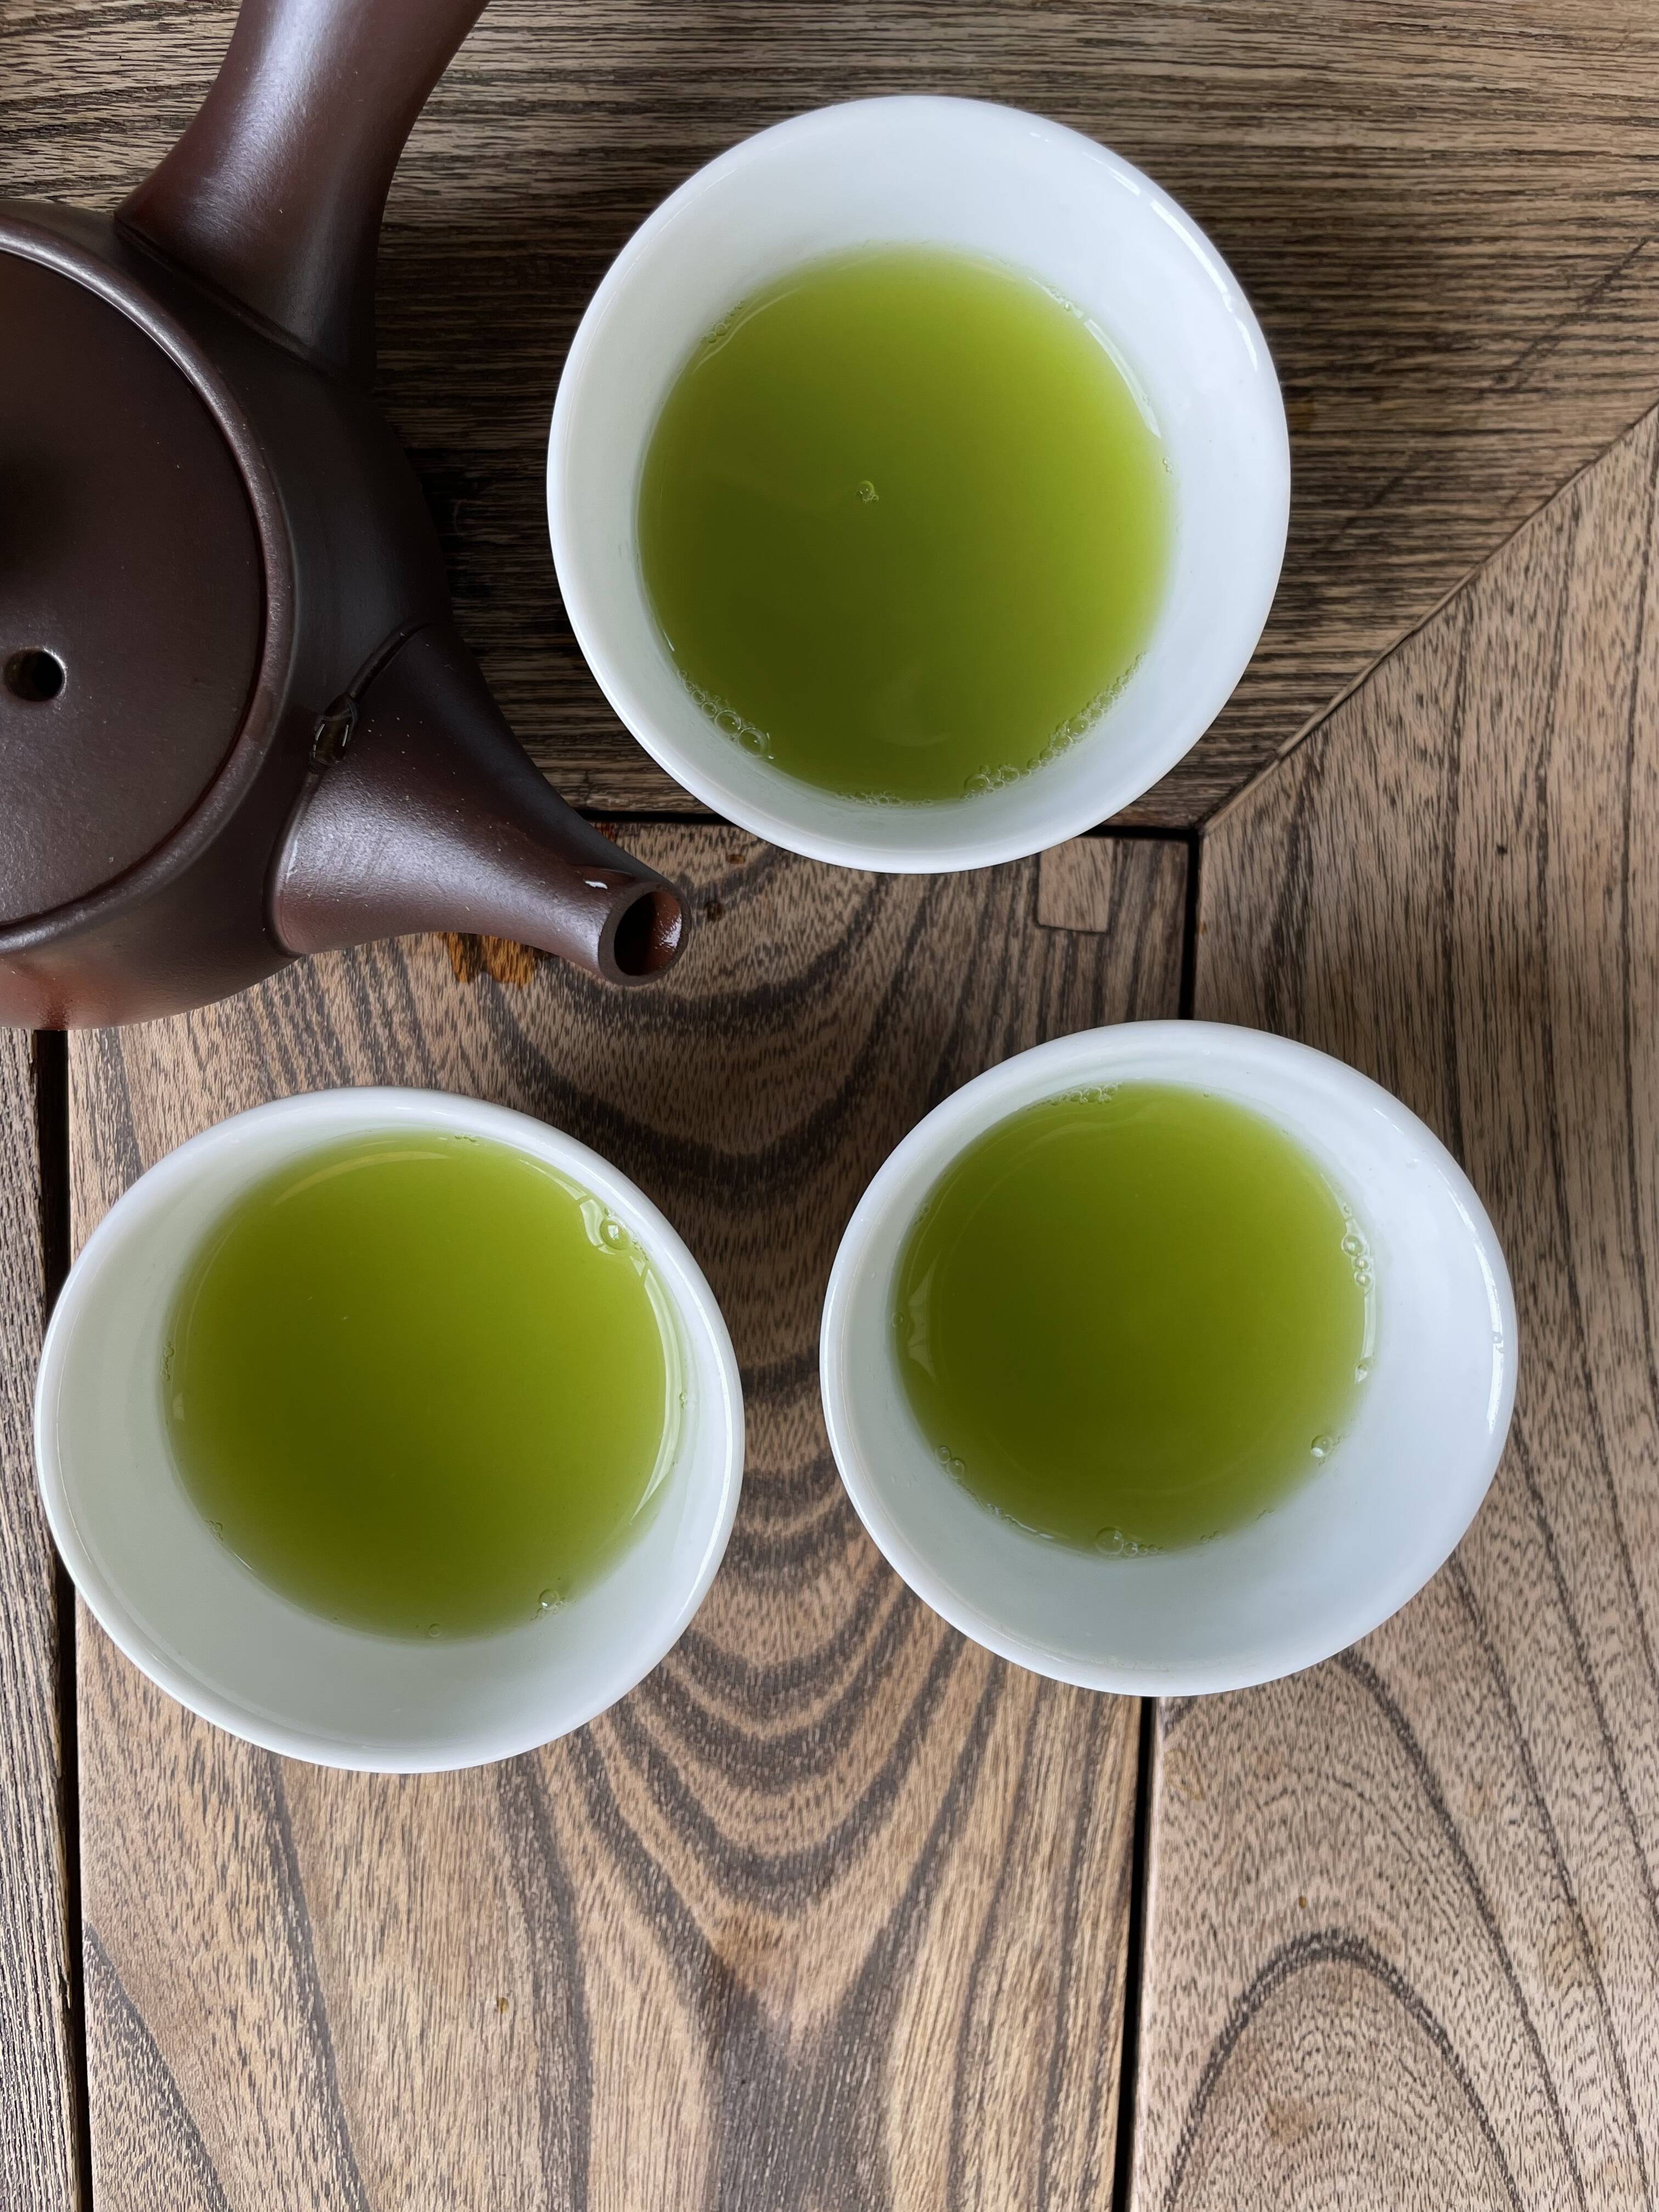 八女茶 お茶 緑茶 高級煎茶 玉露入りティーバック 5g×50個入り - 茶